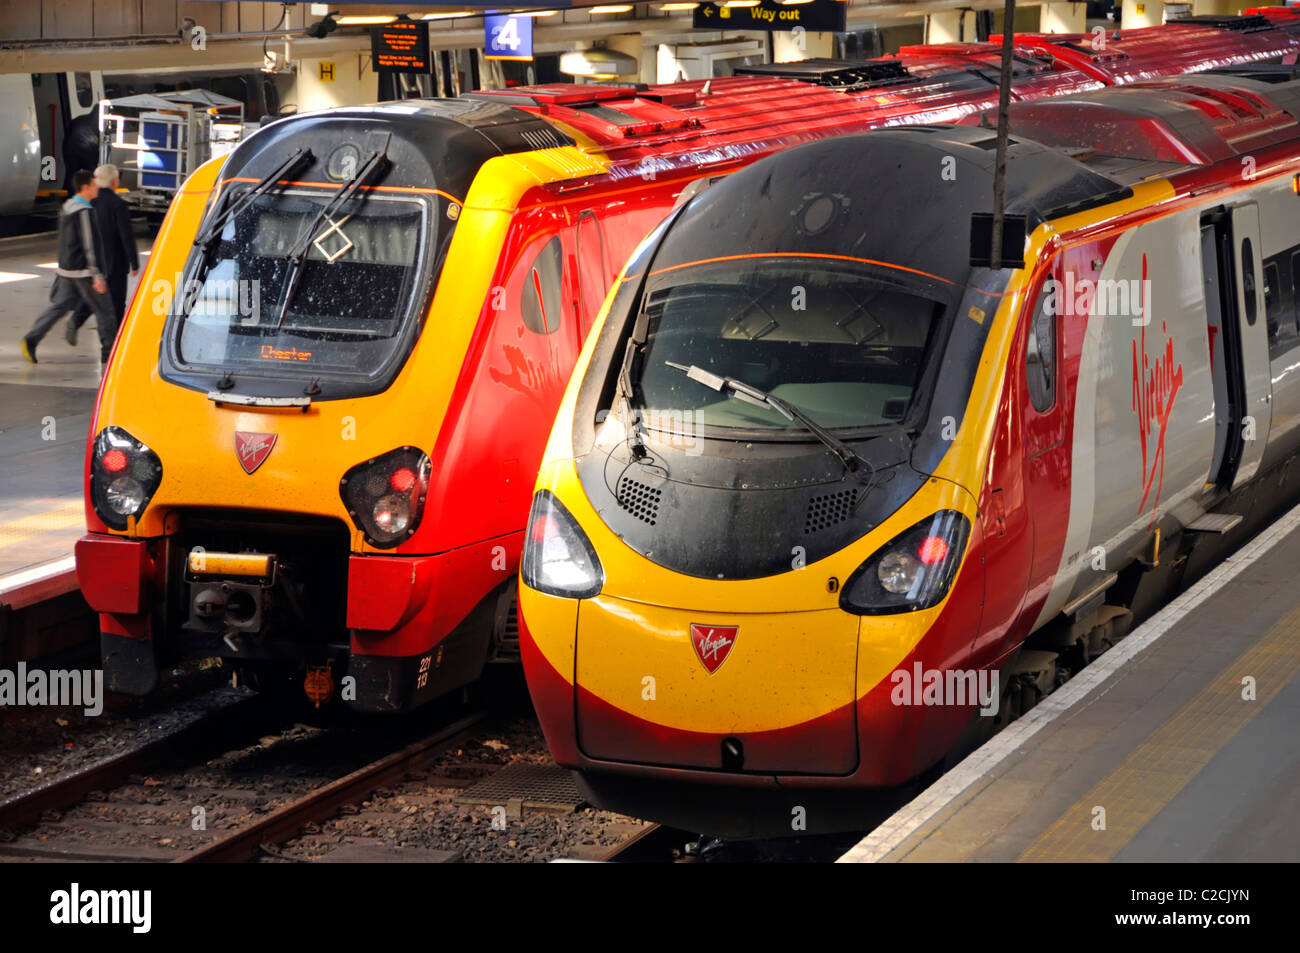 Zwei stromlinienförmige Expresszüge von Virgin an den Bahnhöfen Euston Terminus, die öffentliche Verkehrsdienste in London, England, anbieten Stockfoto